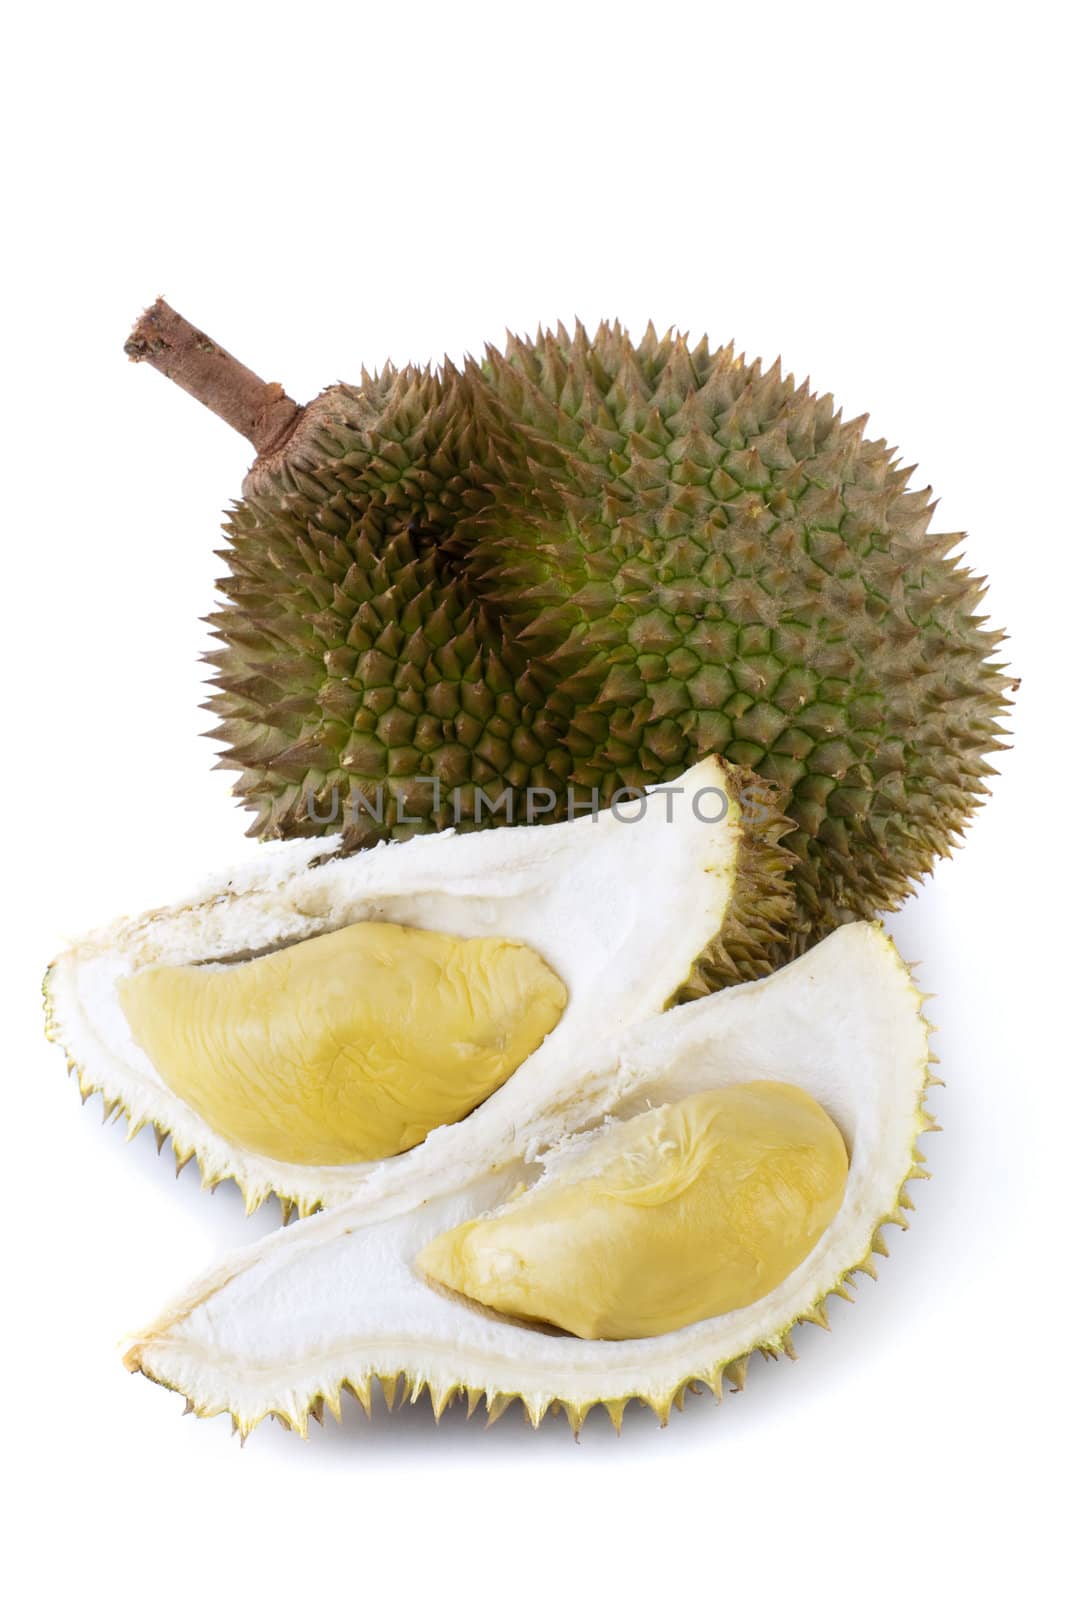 Durian by szefei